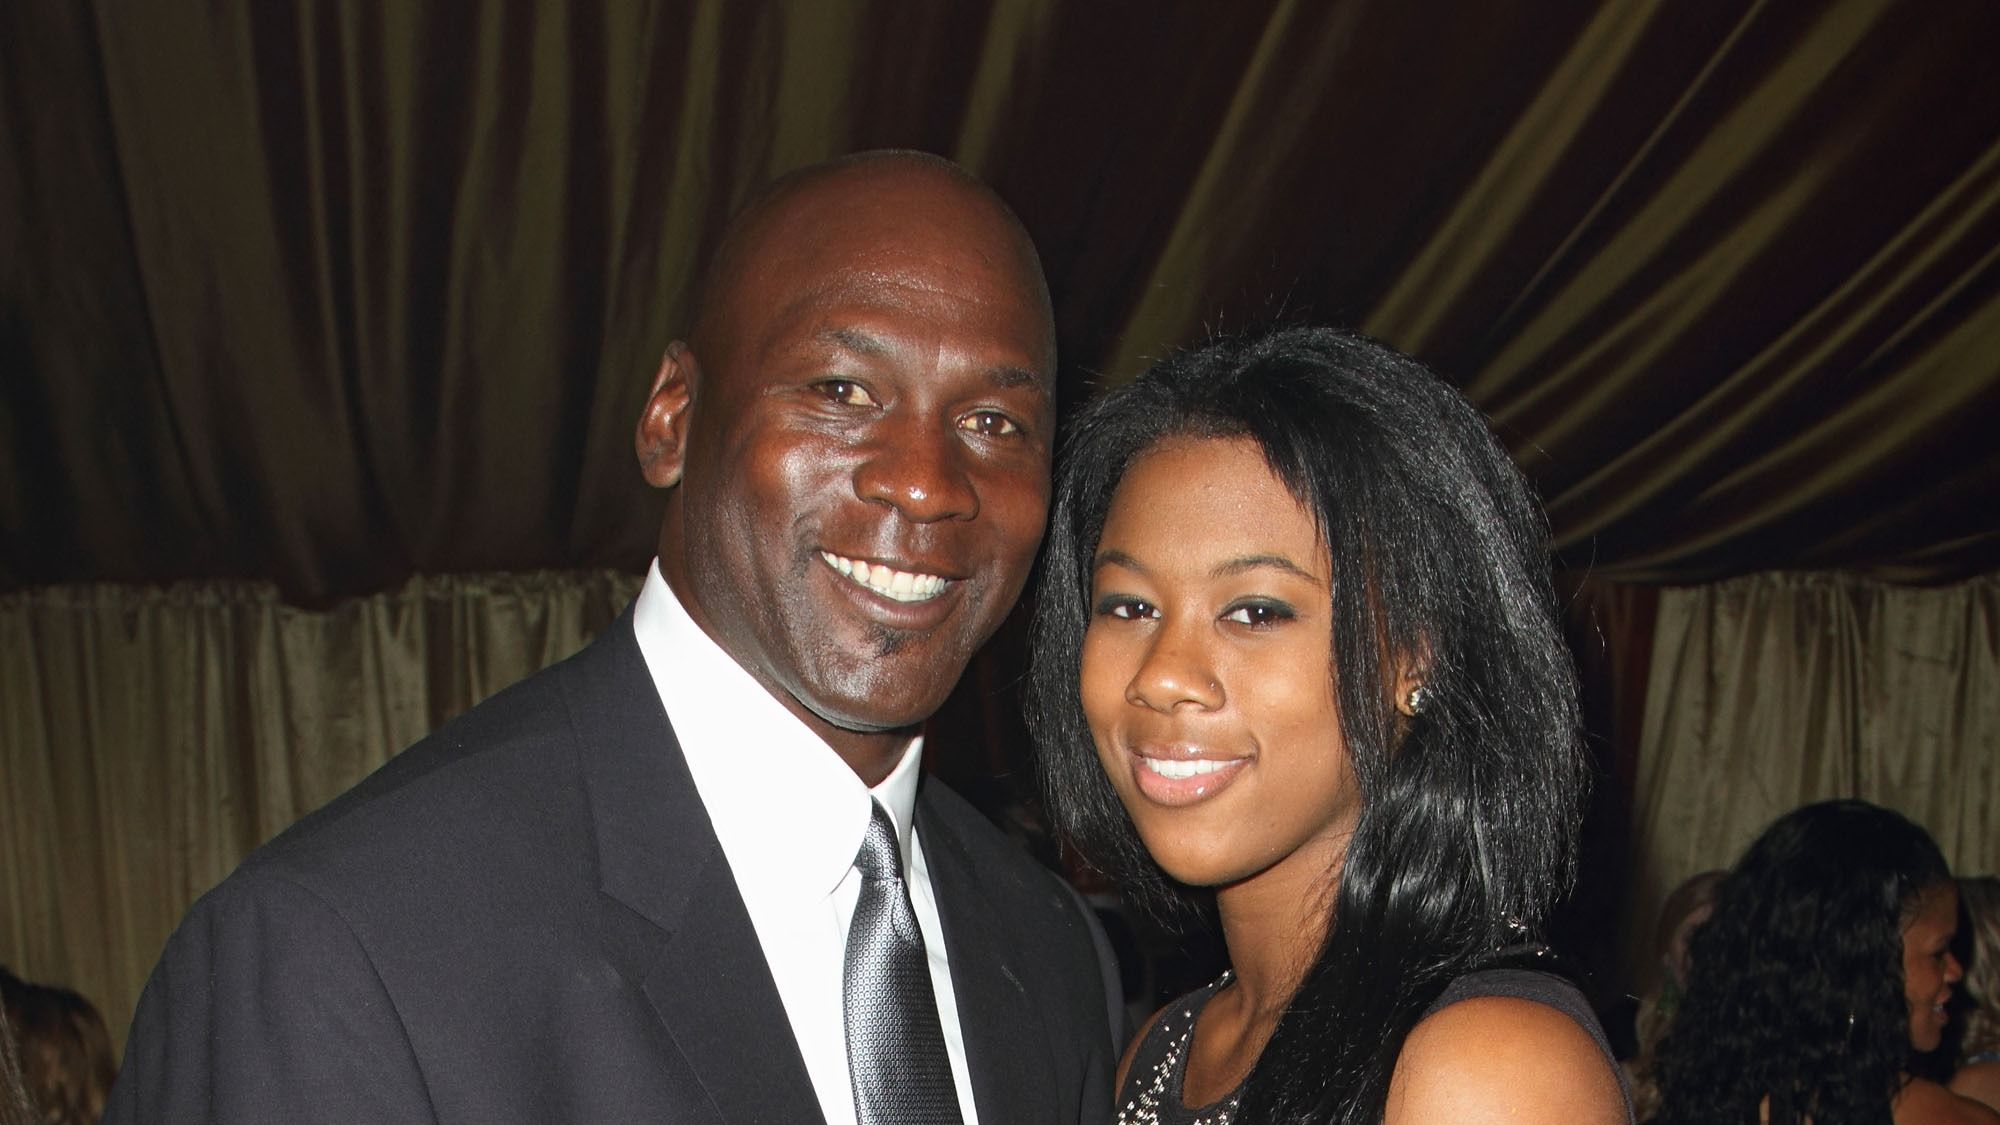 Michael Jordan's Daughter Jasmine Jordan Opens Up About Her Dad